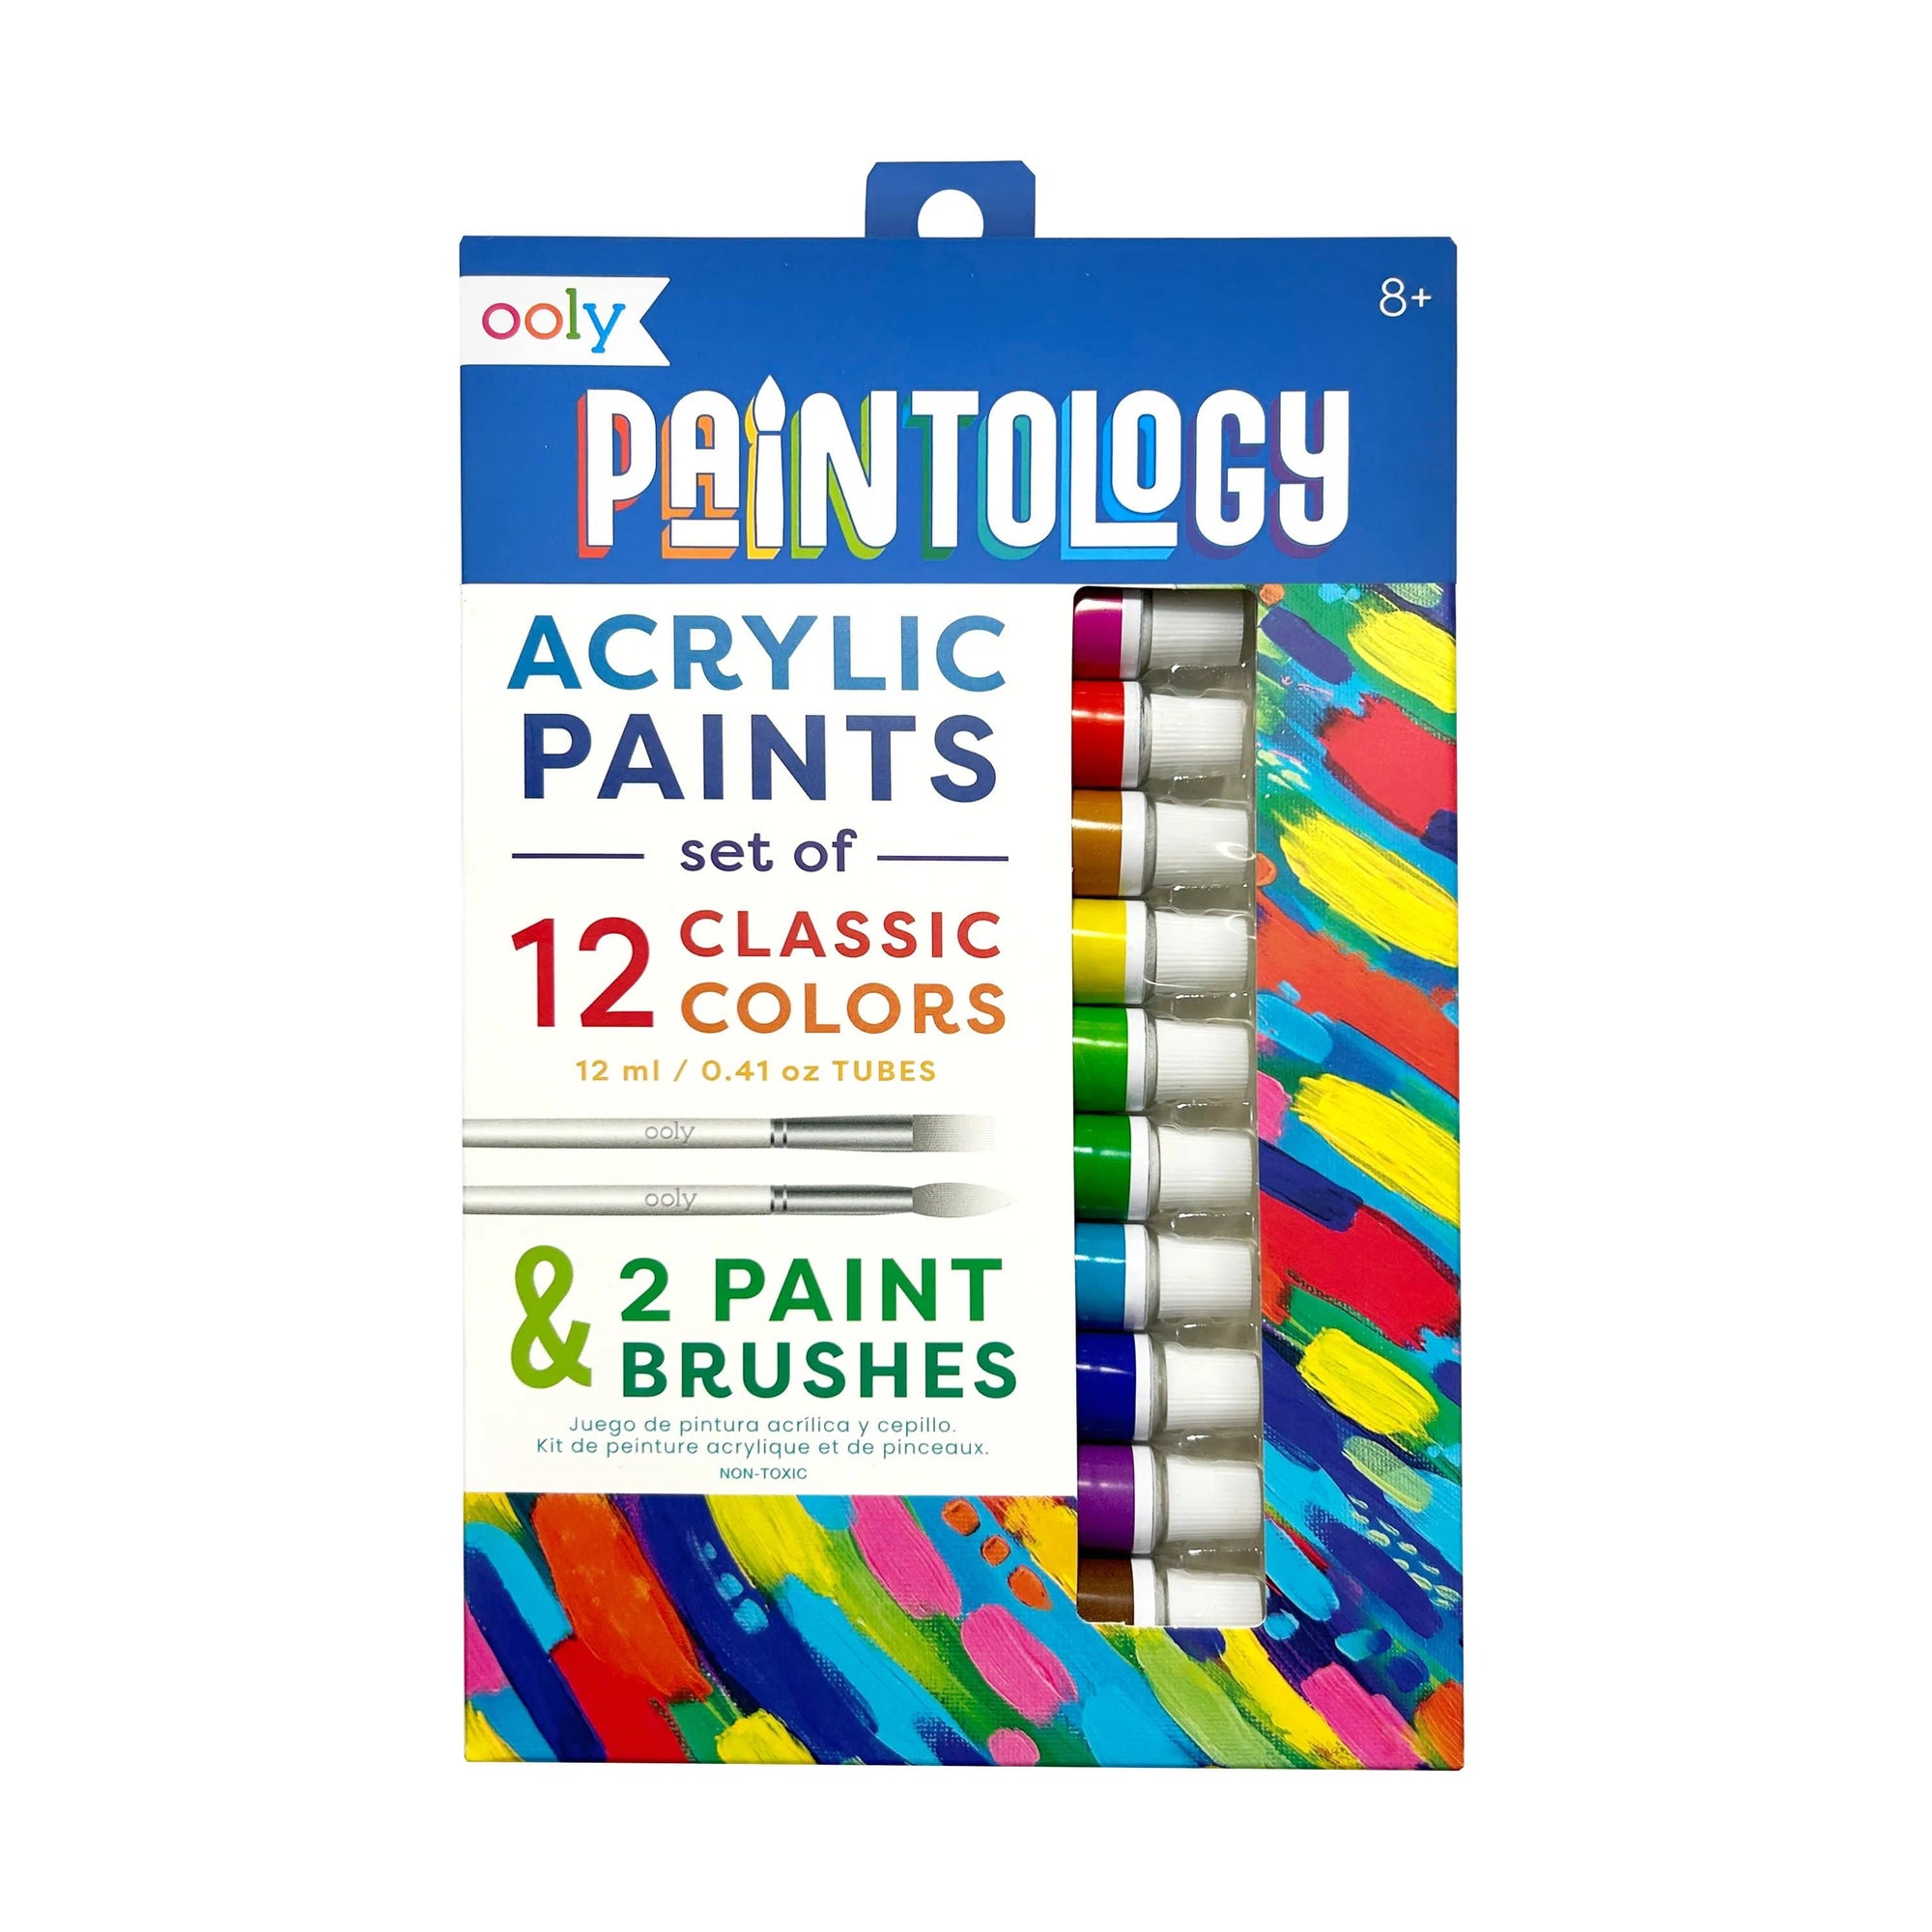 Paintology Acrylic Paints + 2 Brushes - Classic Colors